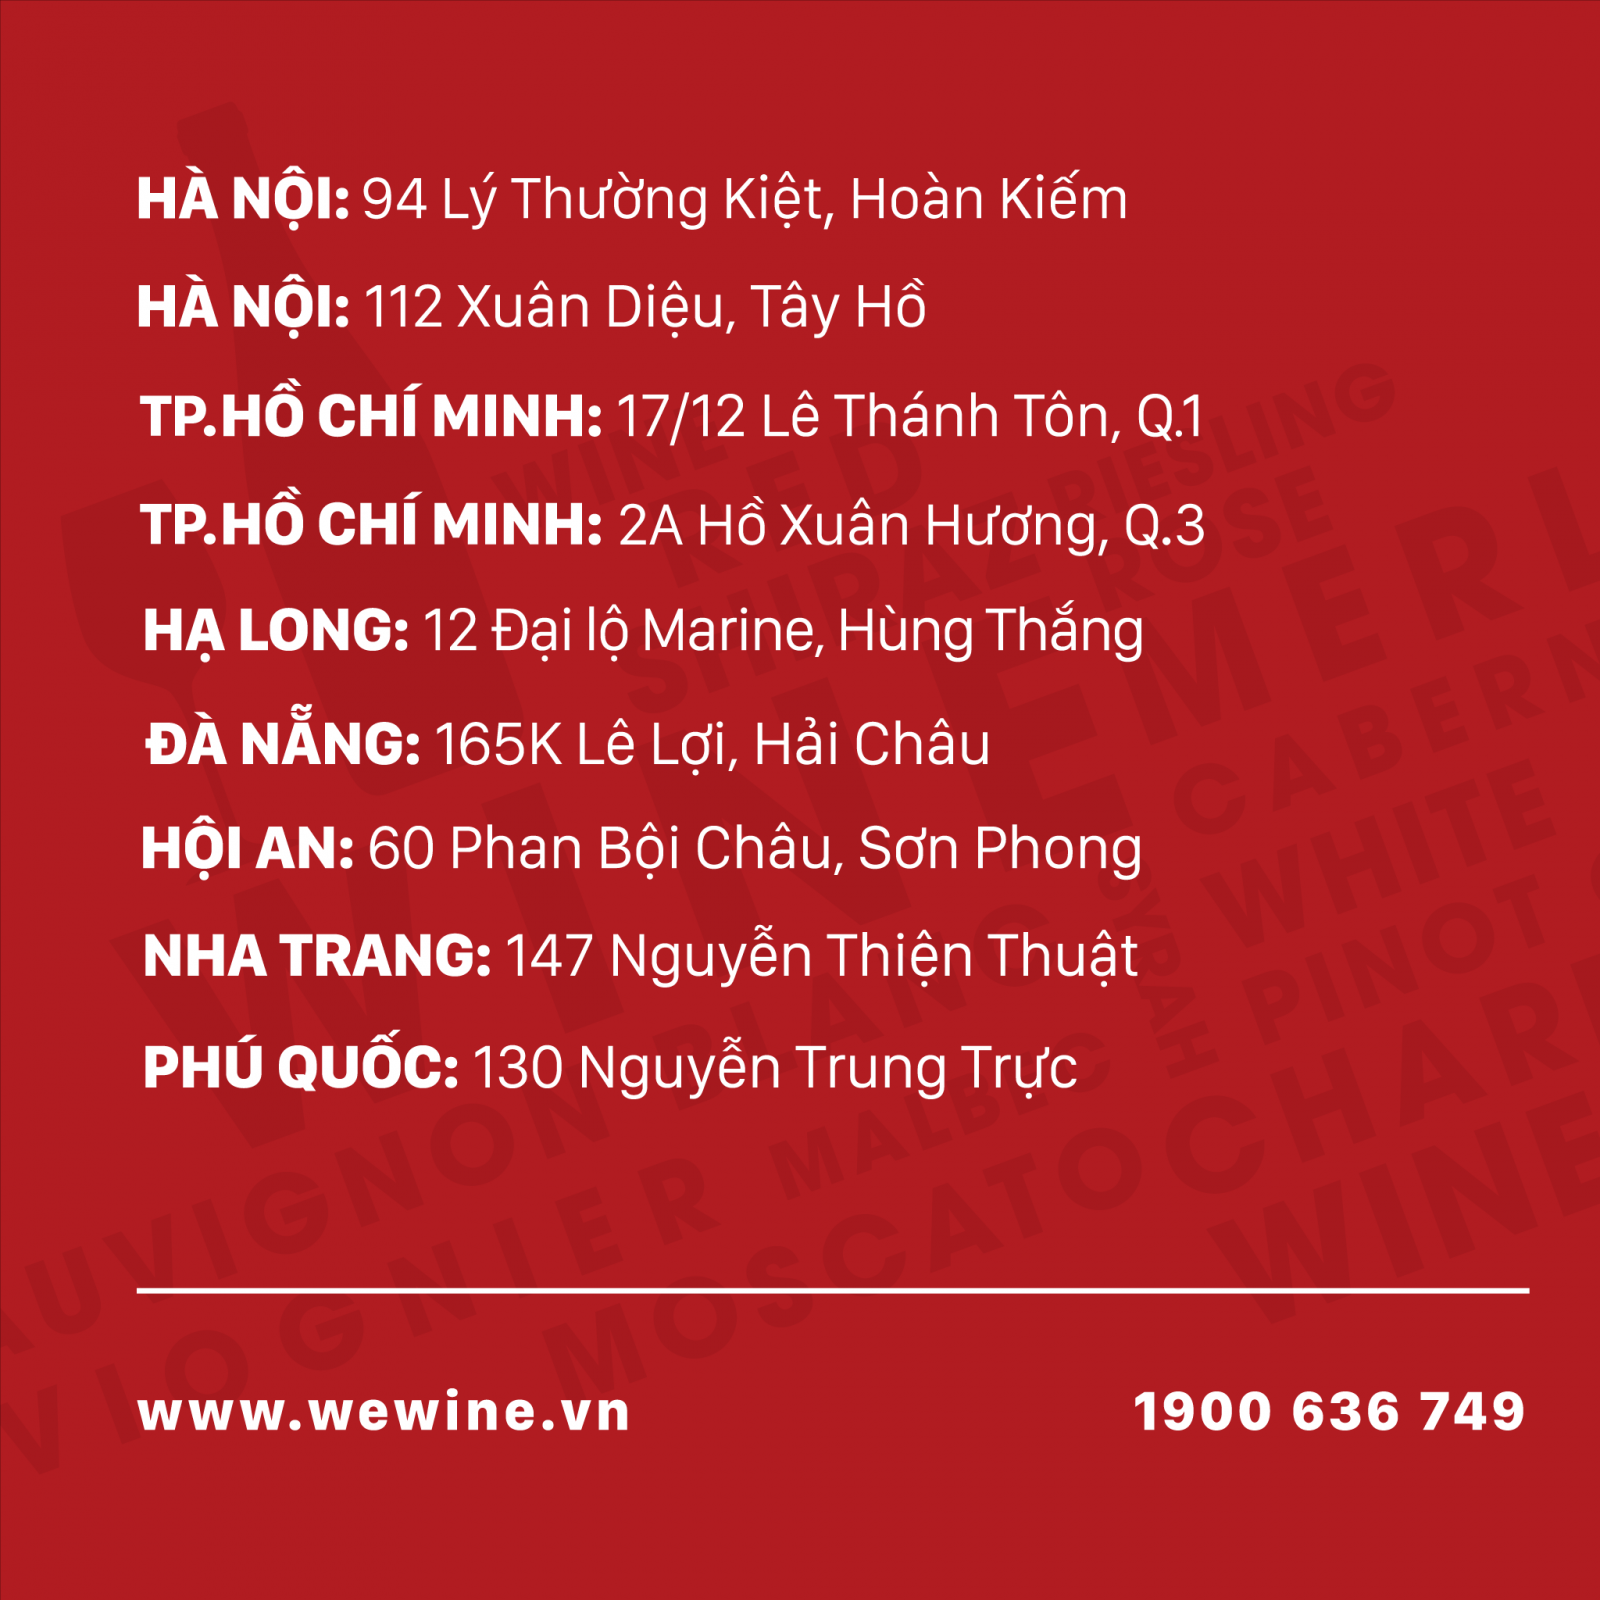 Hệ thống cửa hàng Rượu vang WeWine Việt Nam